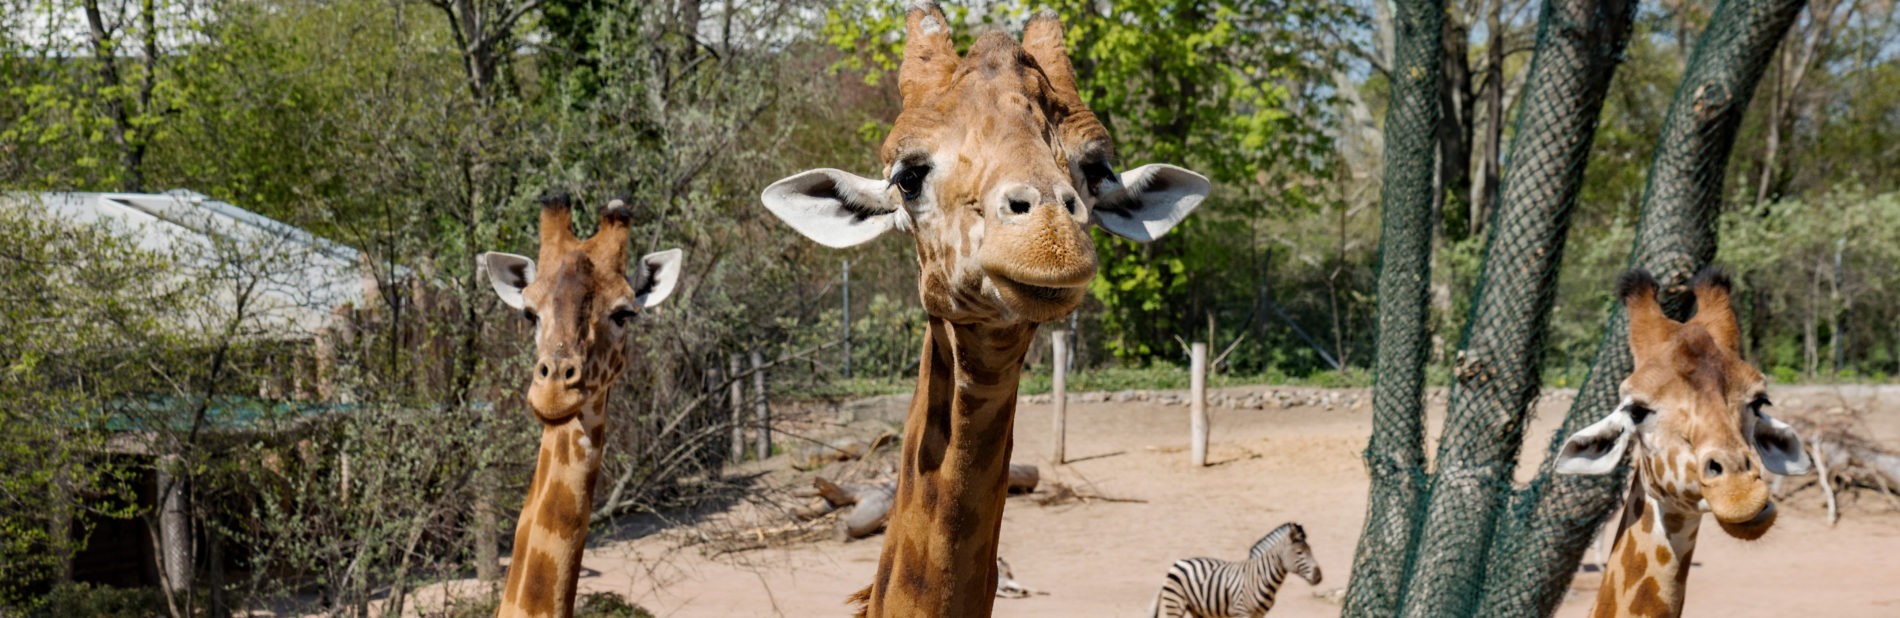 Kordofan giraffes